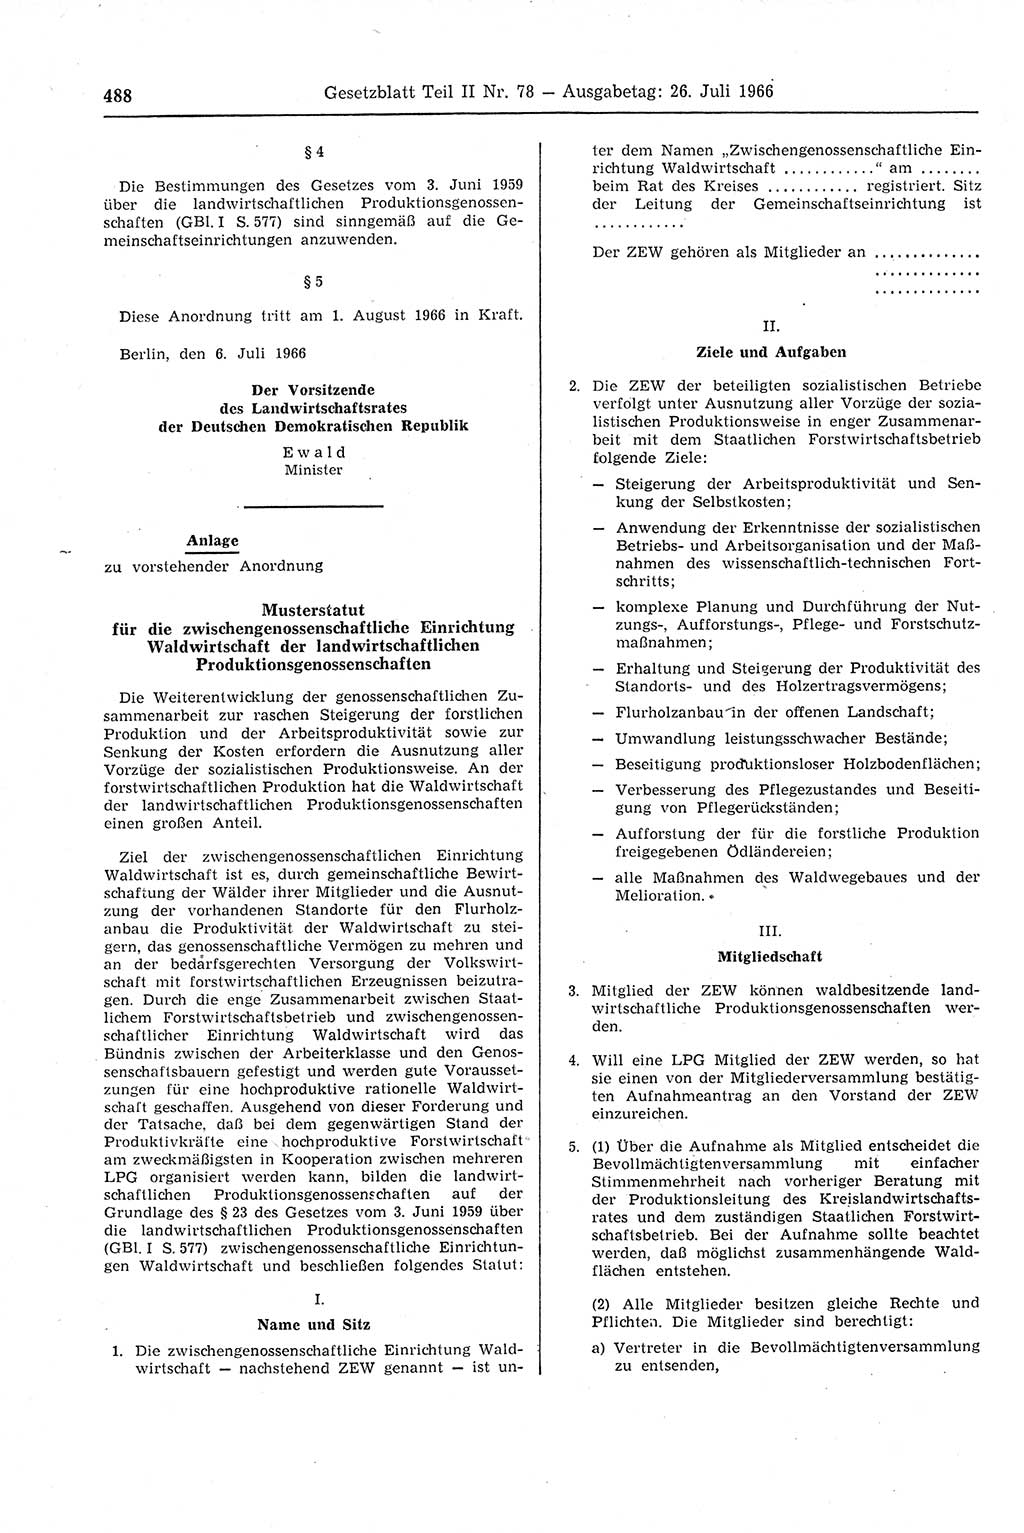 Gesetzblatt (GBl.) der Deutschen Demokratischen Republik (DDR) Teil ⅠⅠ 1966, Seite 488 (GBl. DDR ⅠⅠ 1966, S. 488)